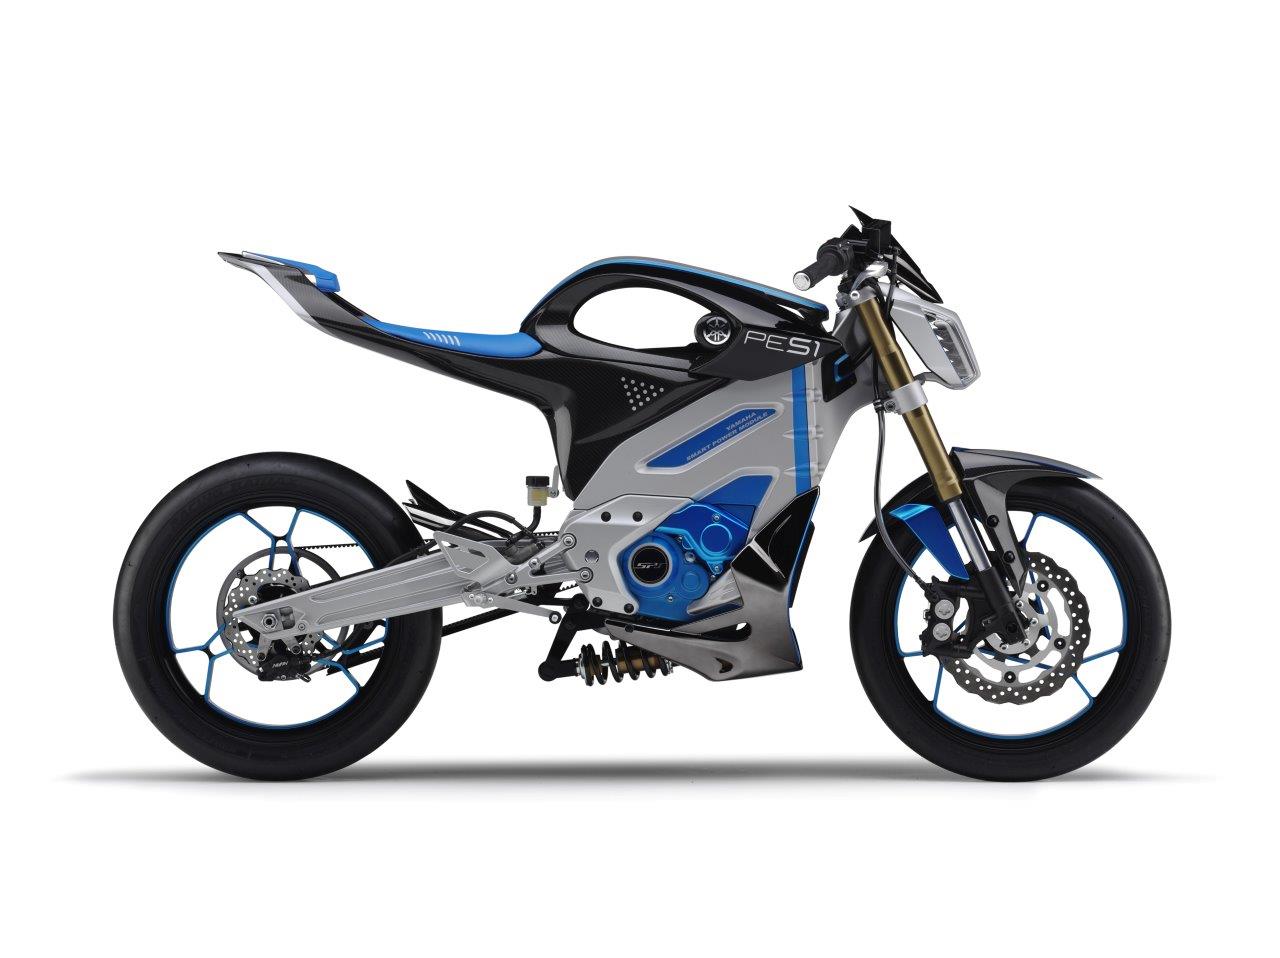 Yamaha concept bikes revealed